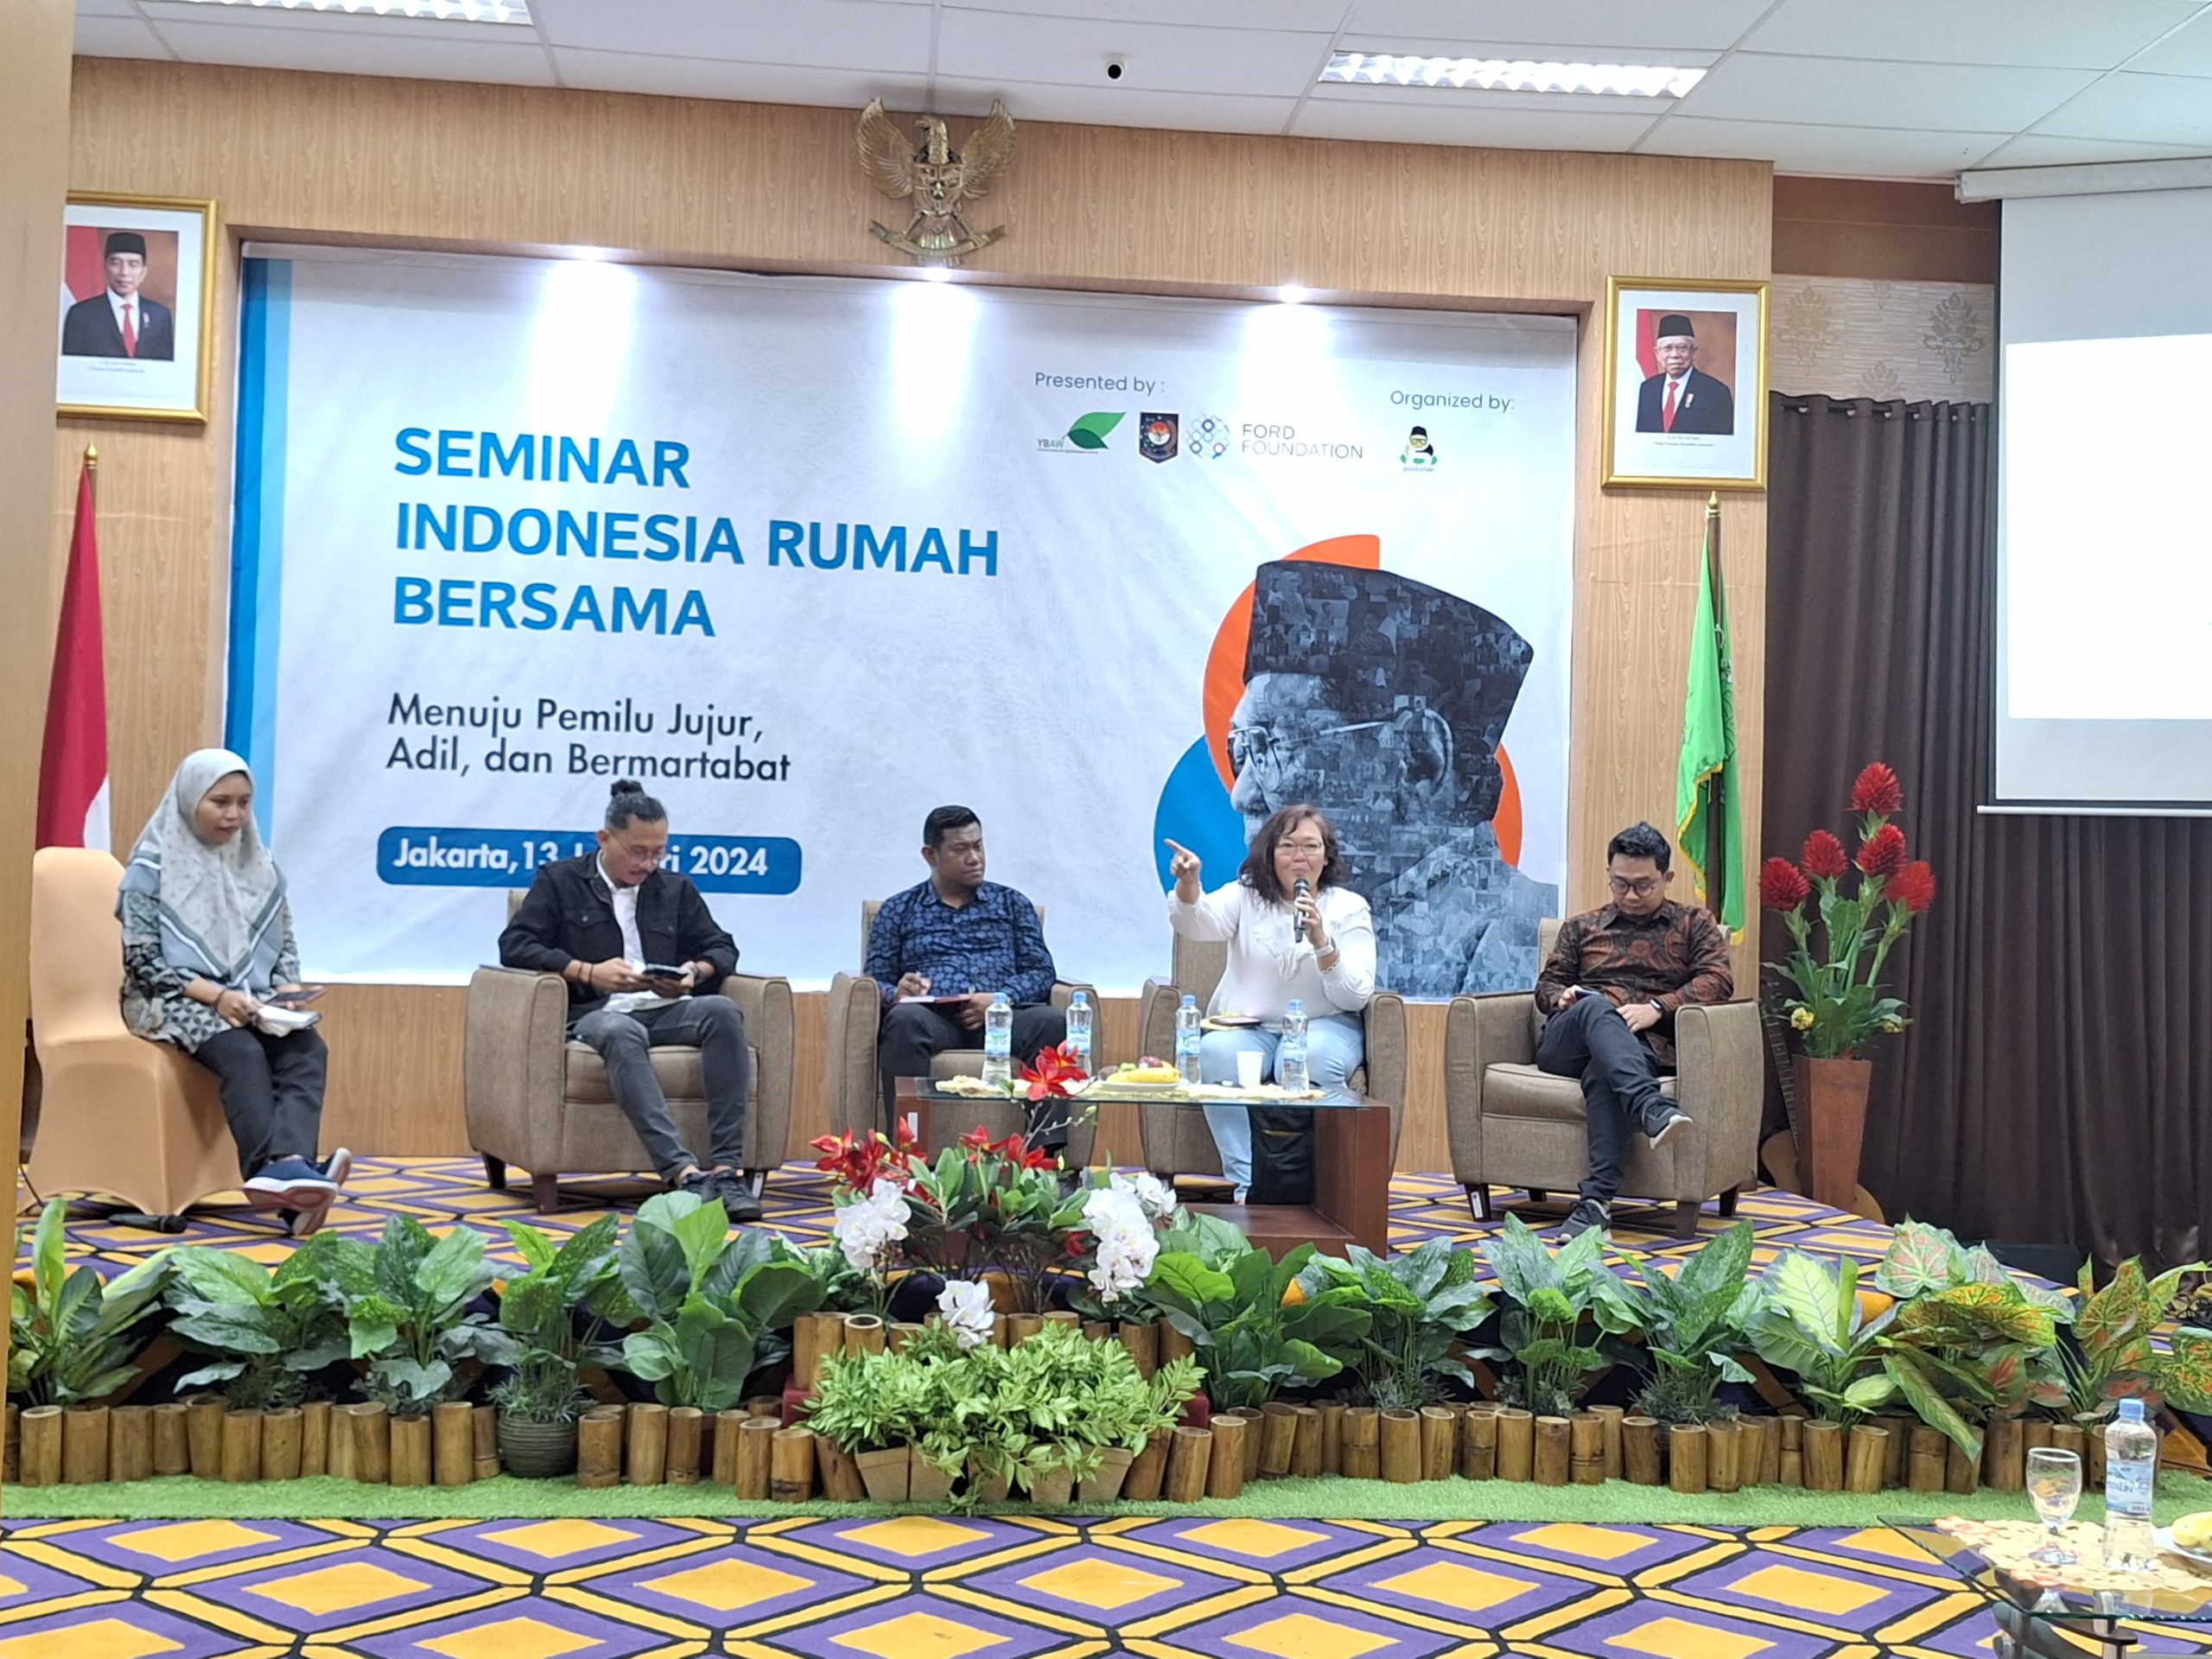 Seminar Indonesia Rumah Bersama